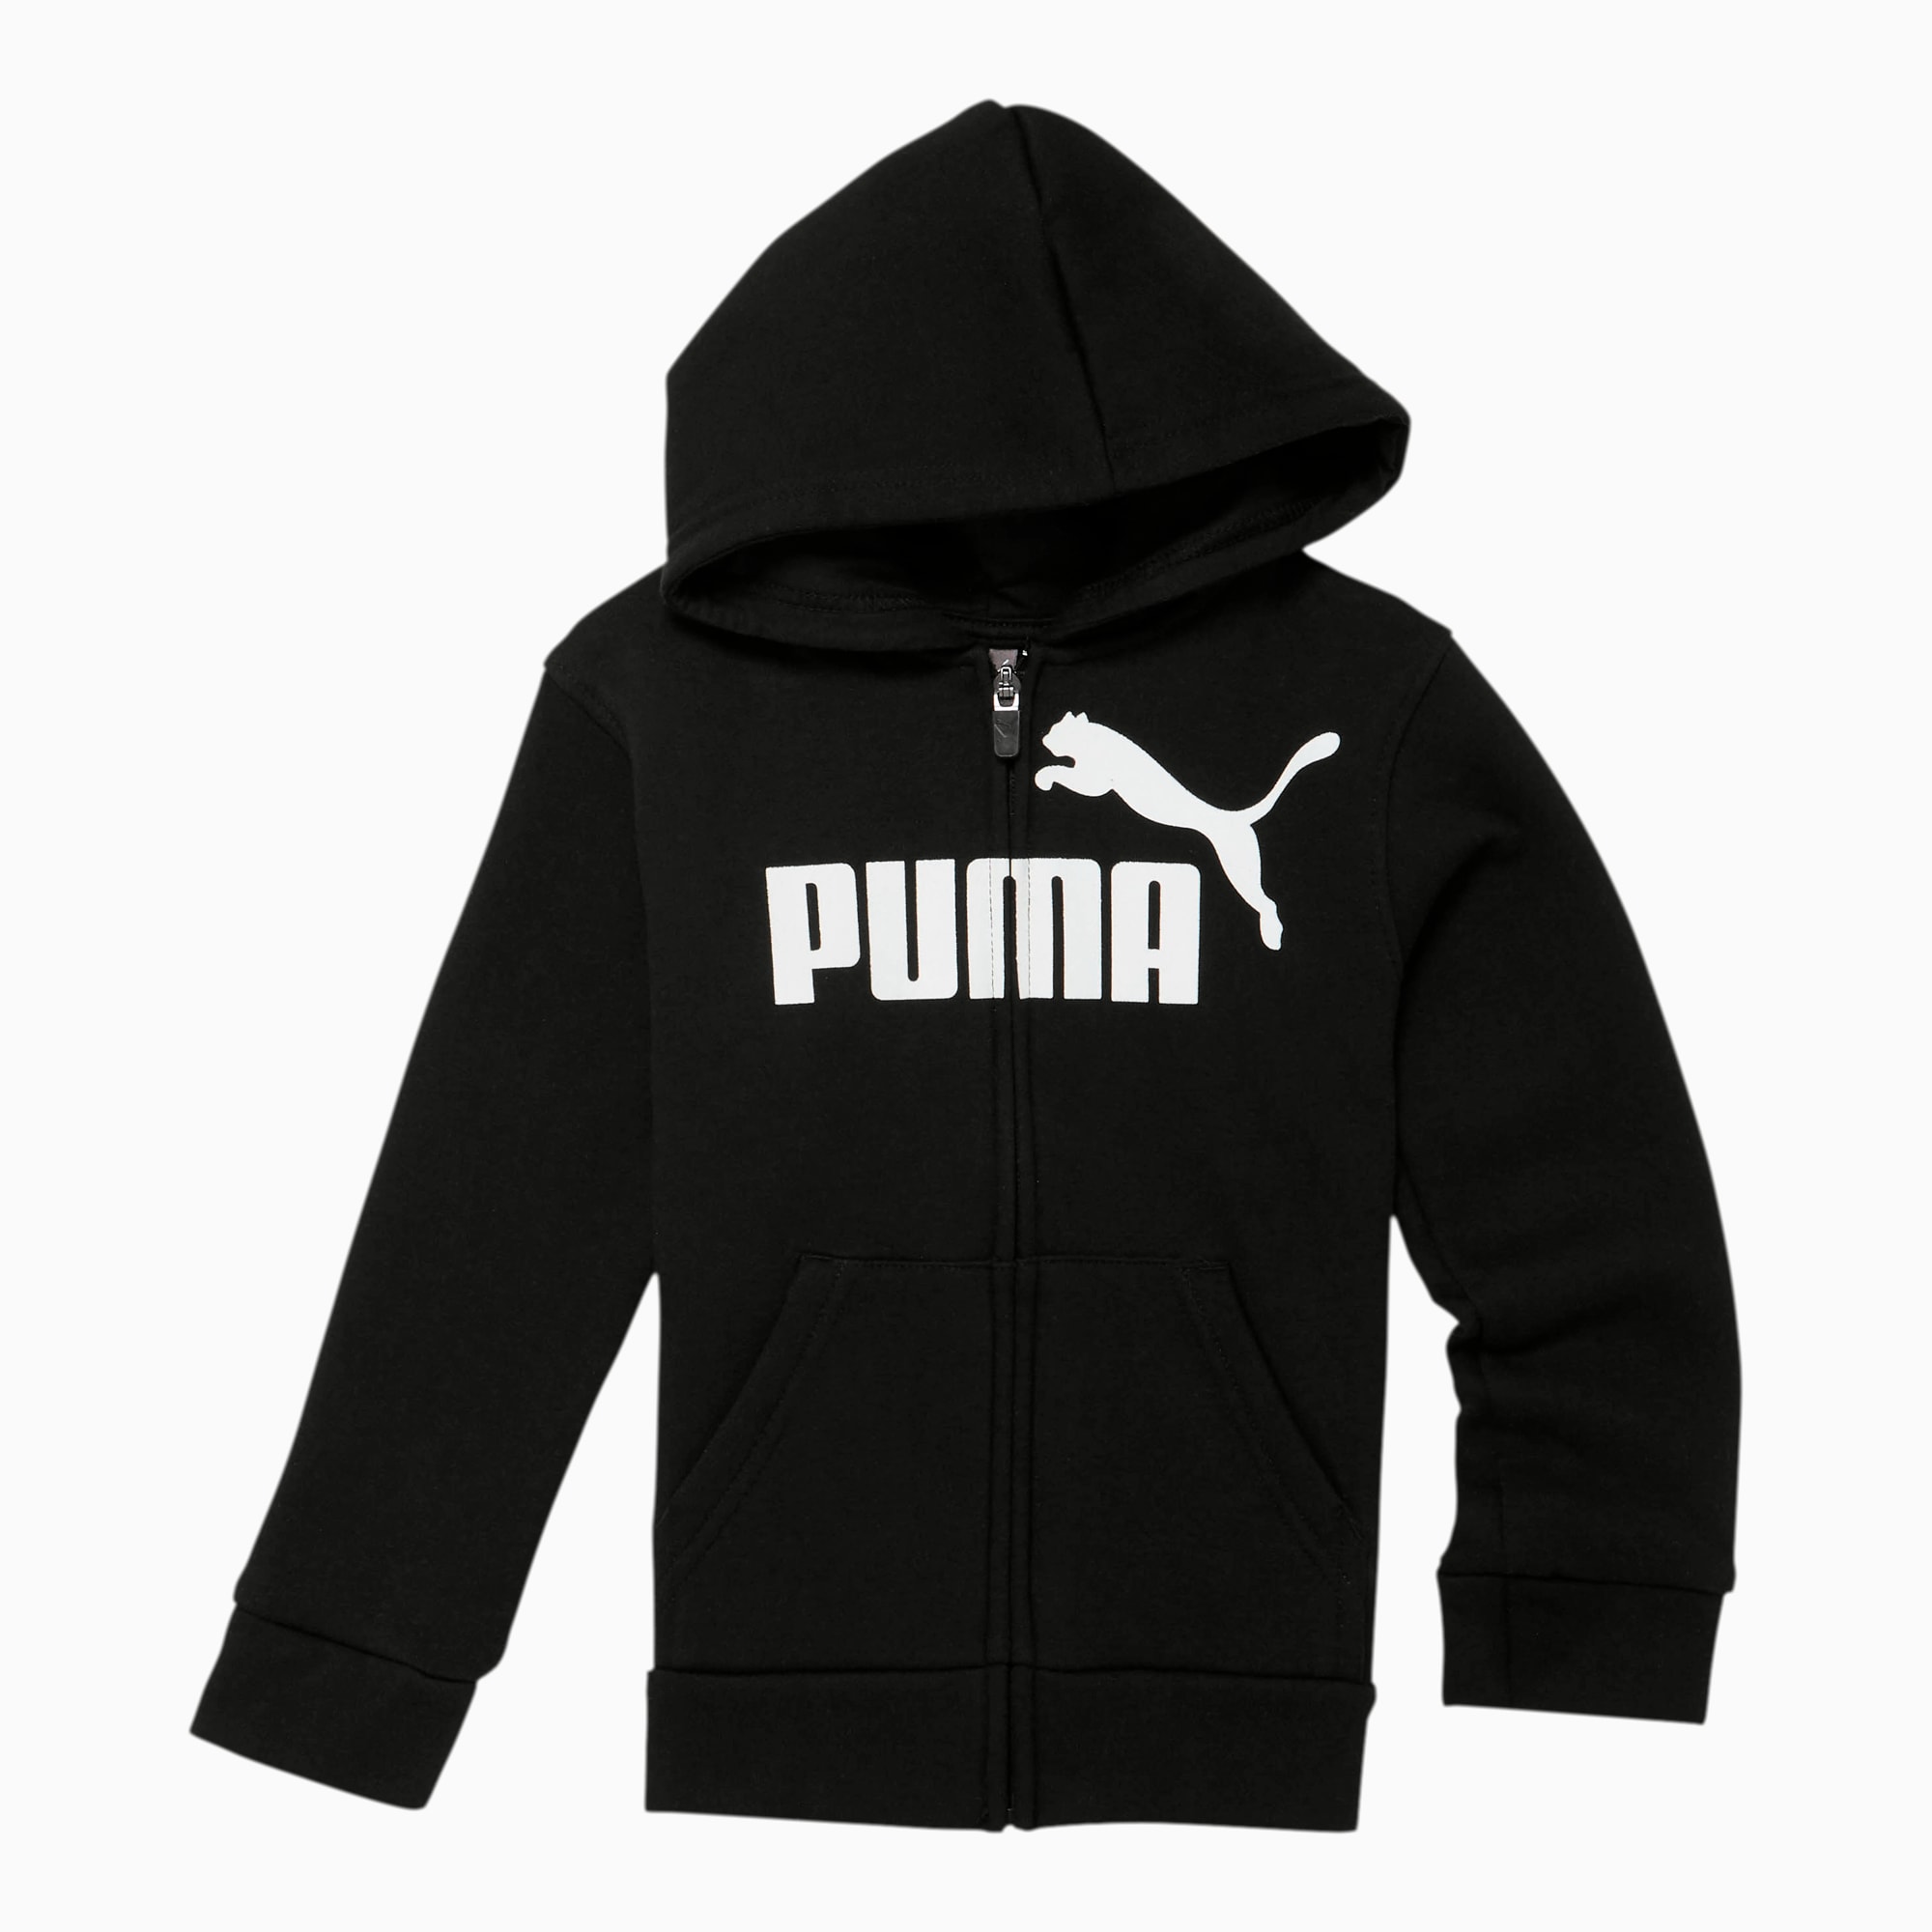 puma sweatshirt kids off 62% - www 